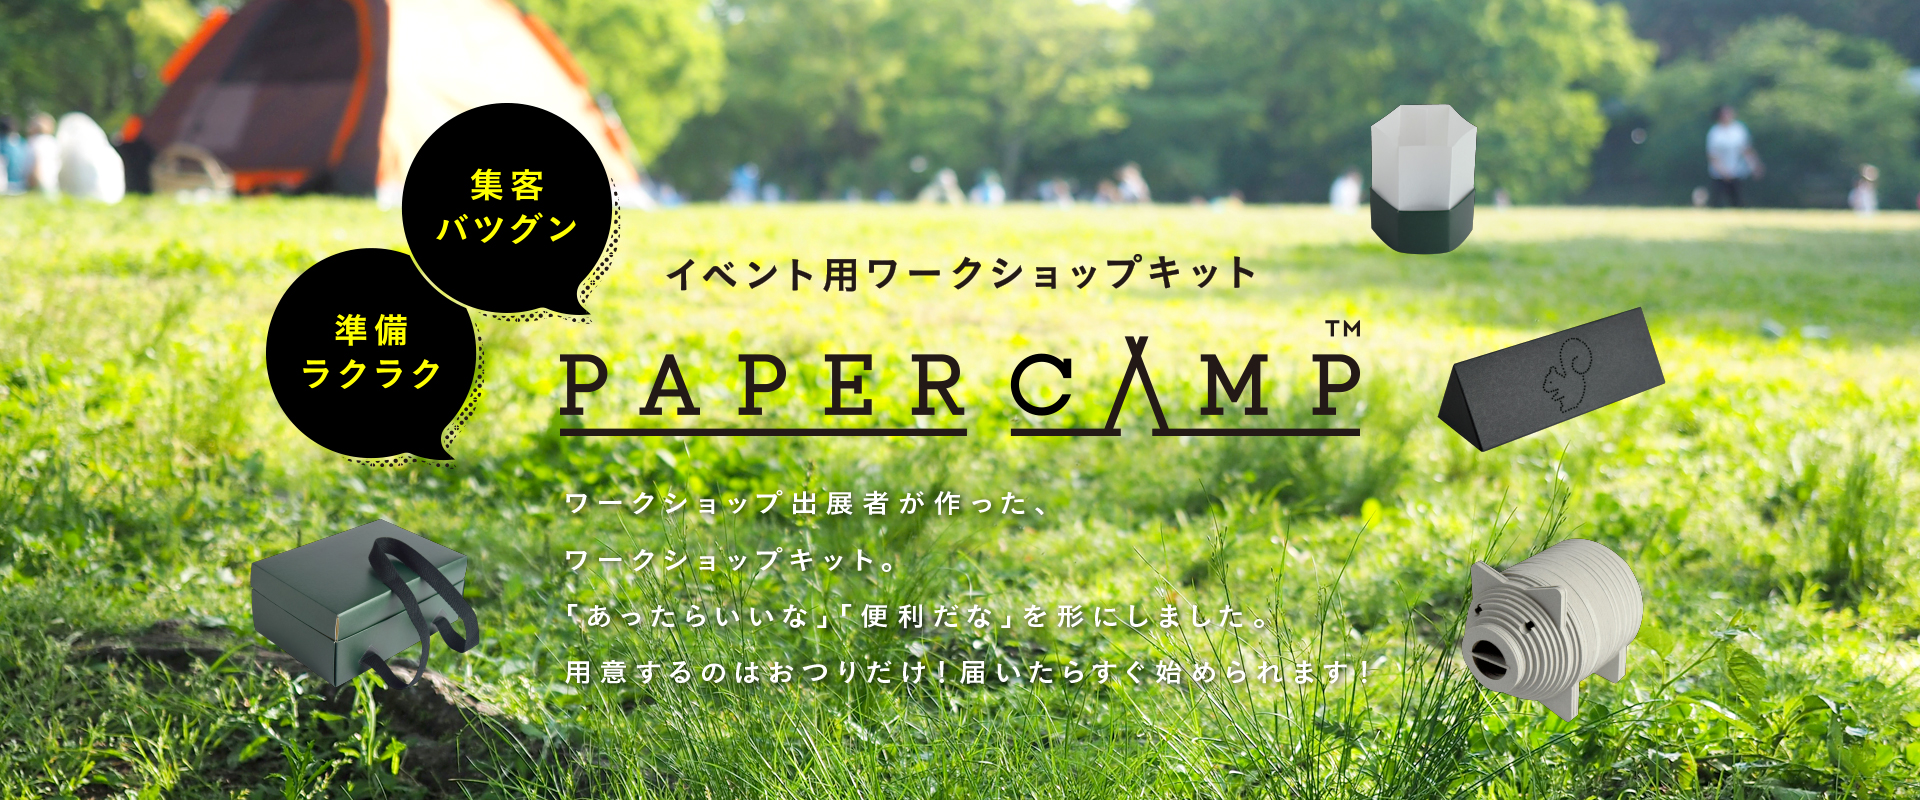 紙製イベント用ワークショップキット PAPER CAMP